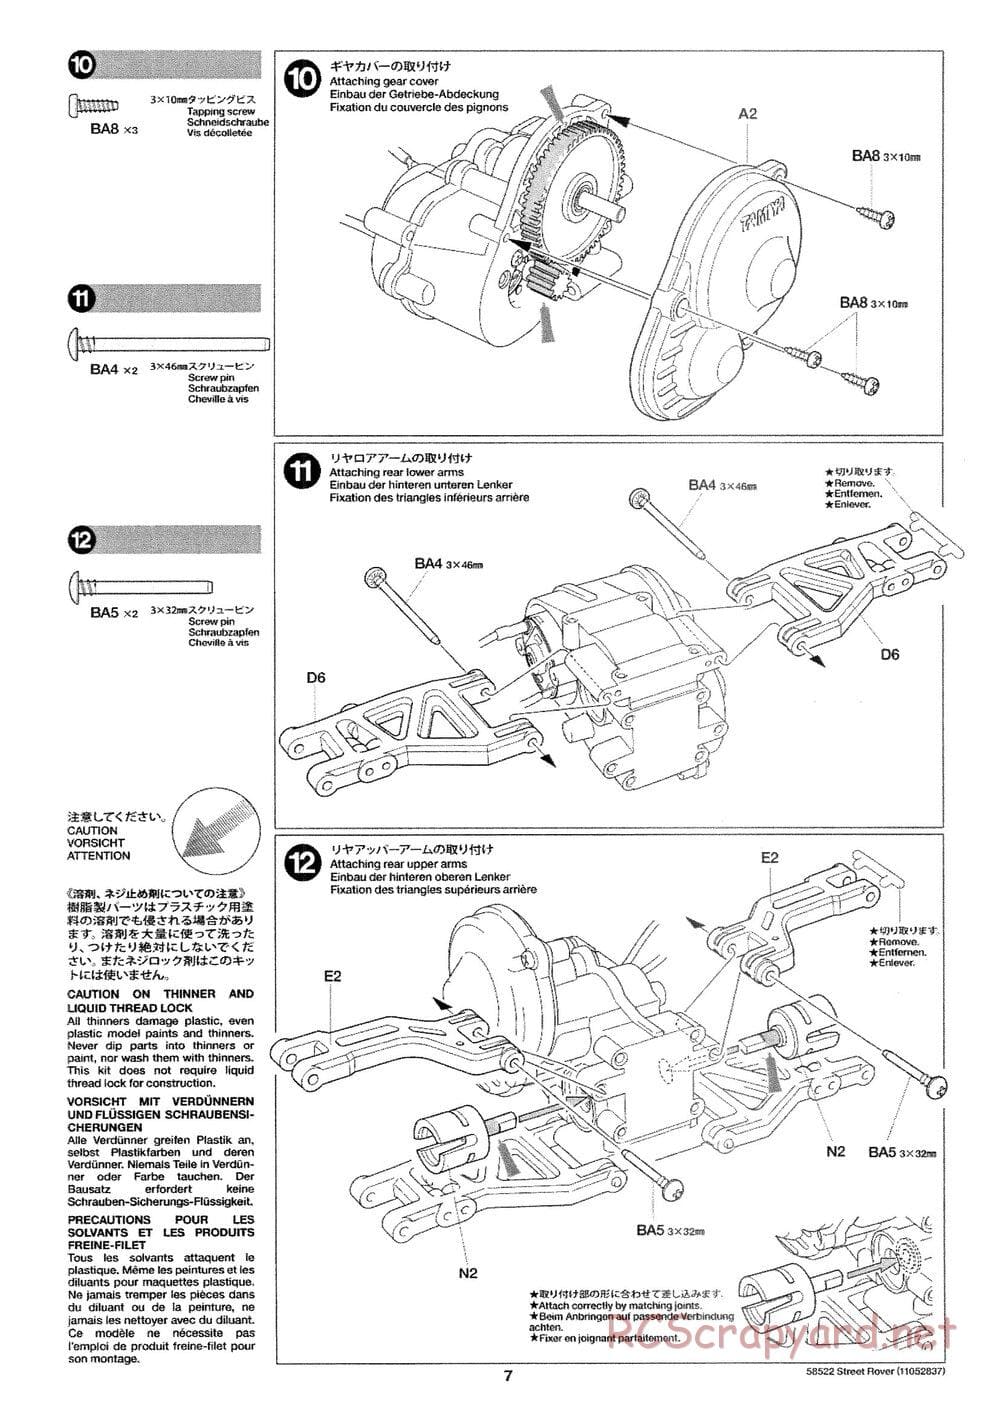 Tamiya - Street Rover Chassis - Manual - Page 8